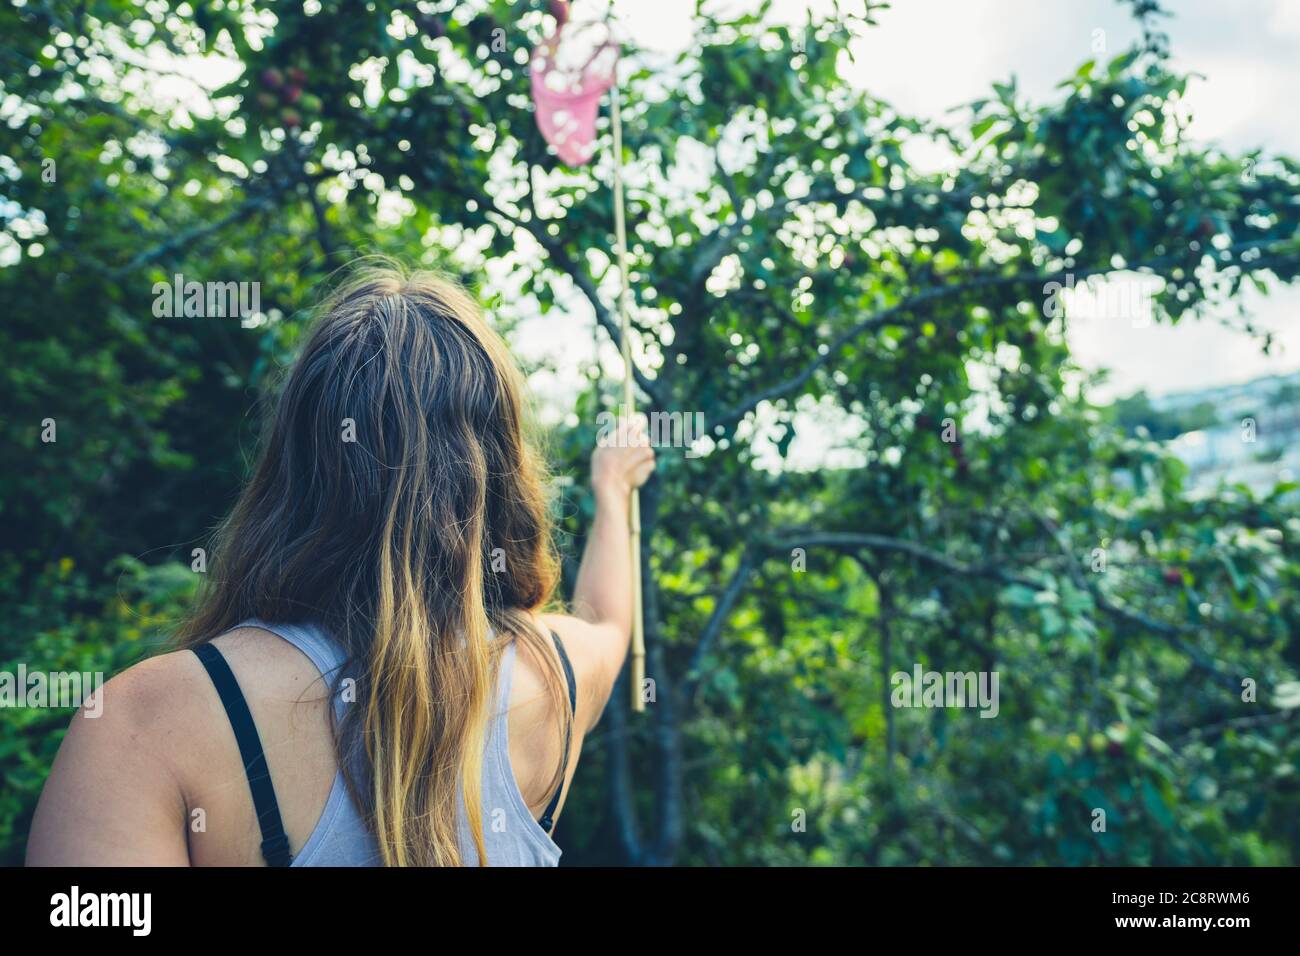 Une jeune femme utilise un filet de pêche pour cueillir des prunes Banque D'Images